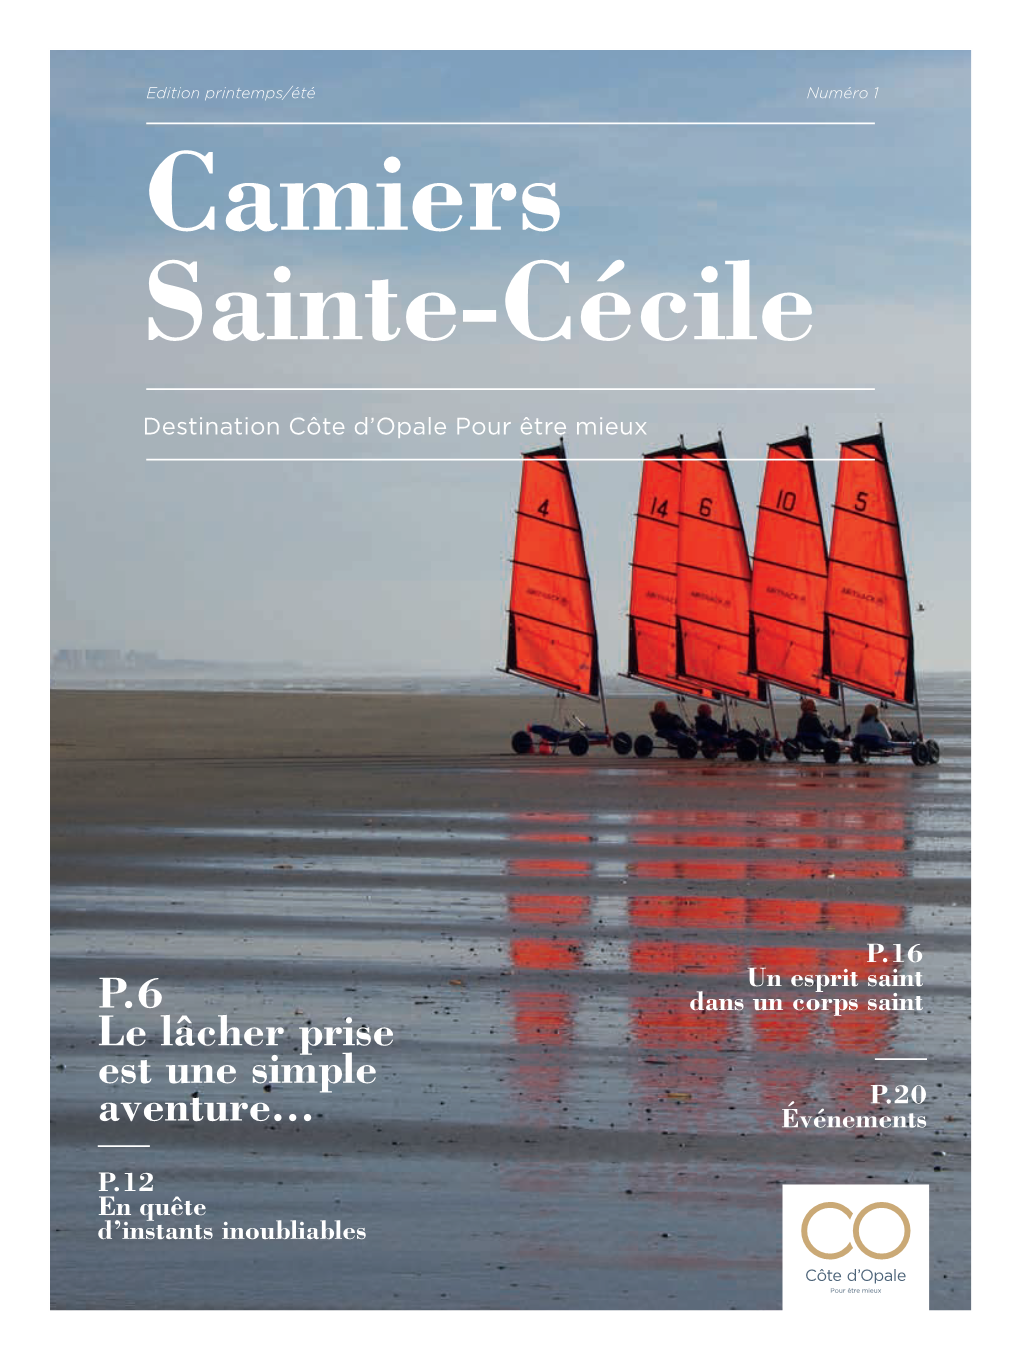 Camiers Sainte-Cécile